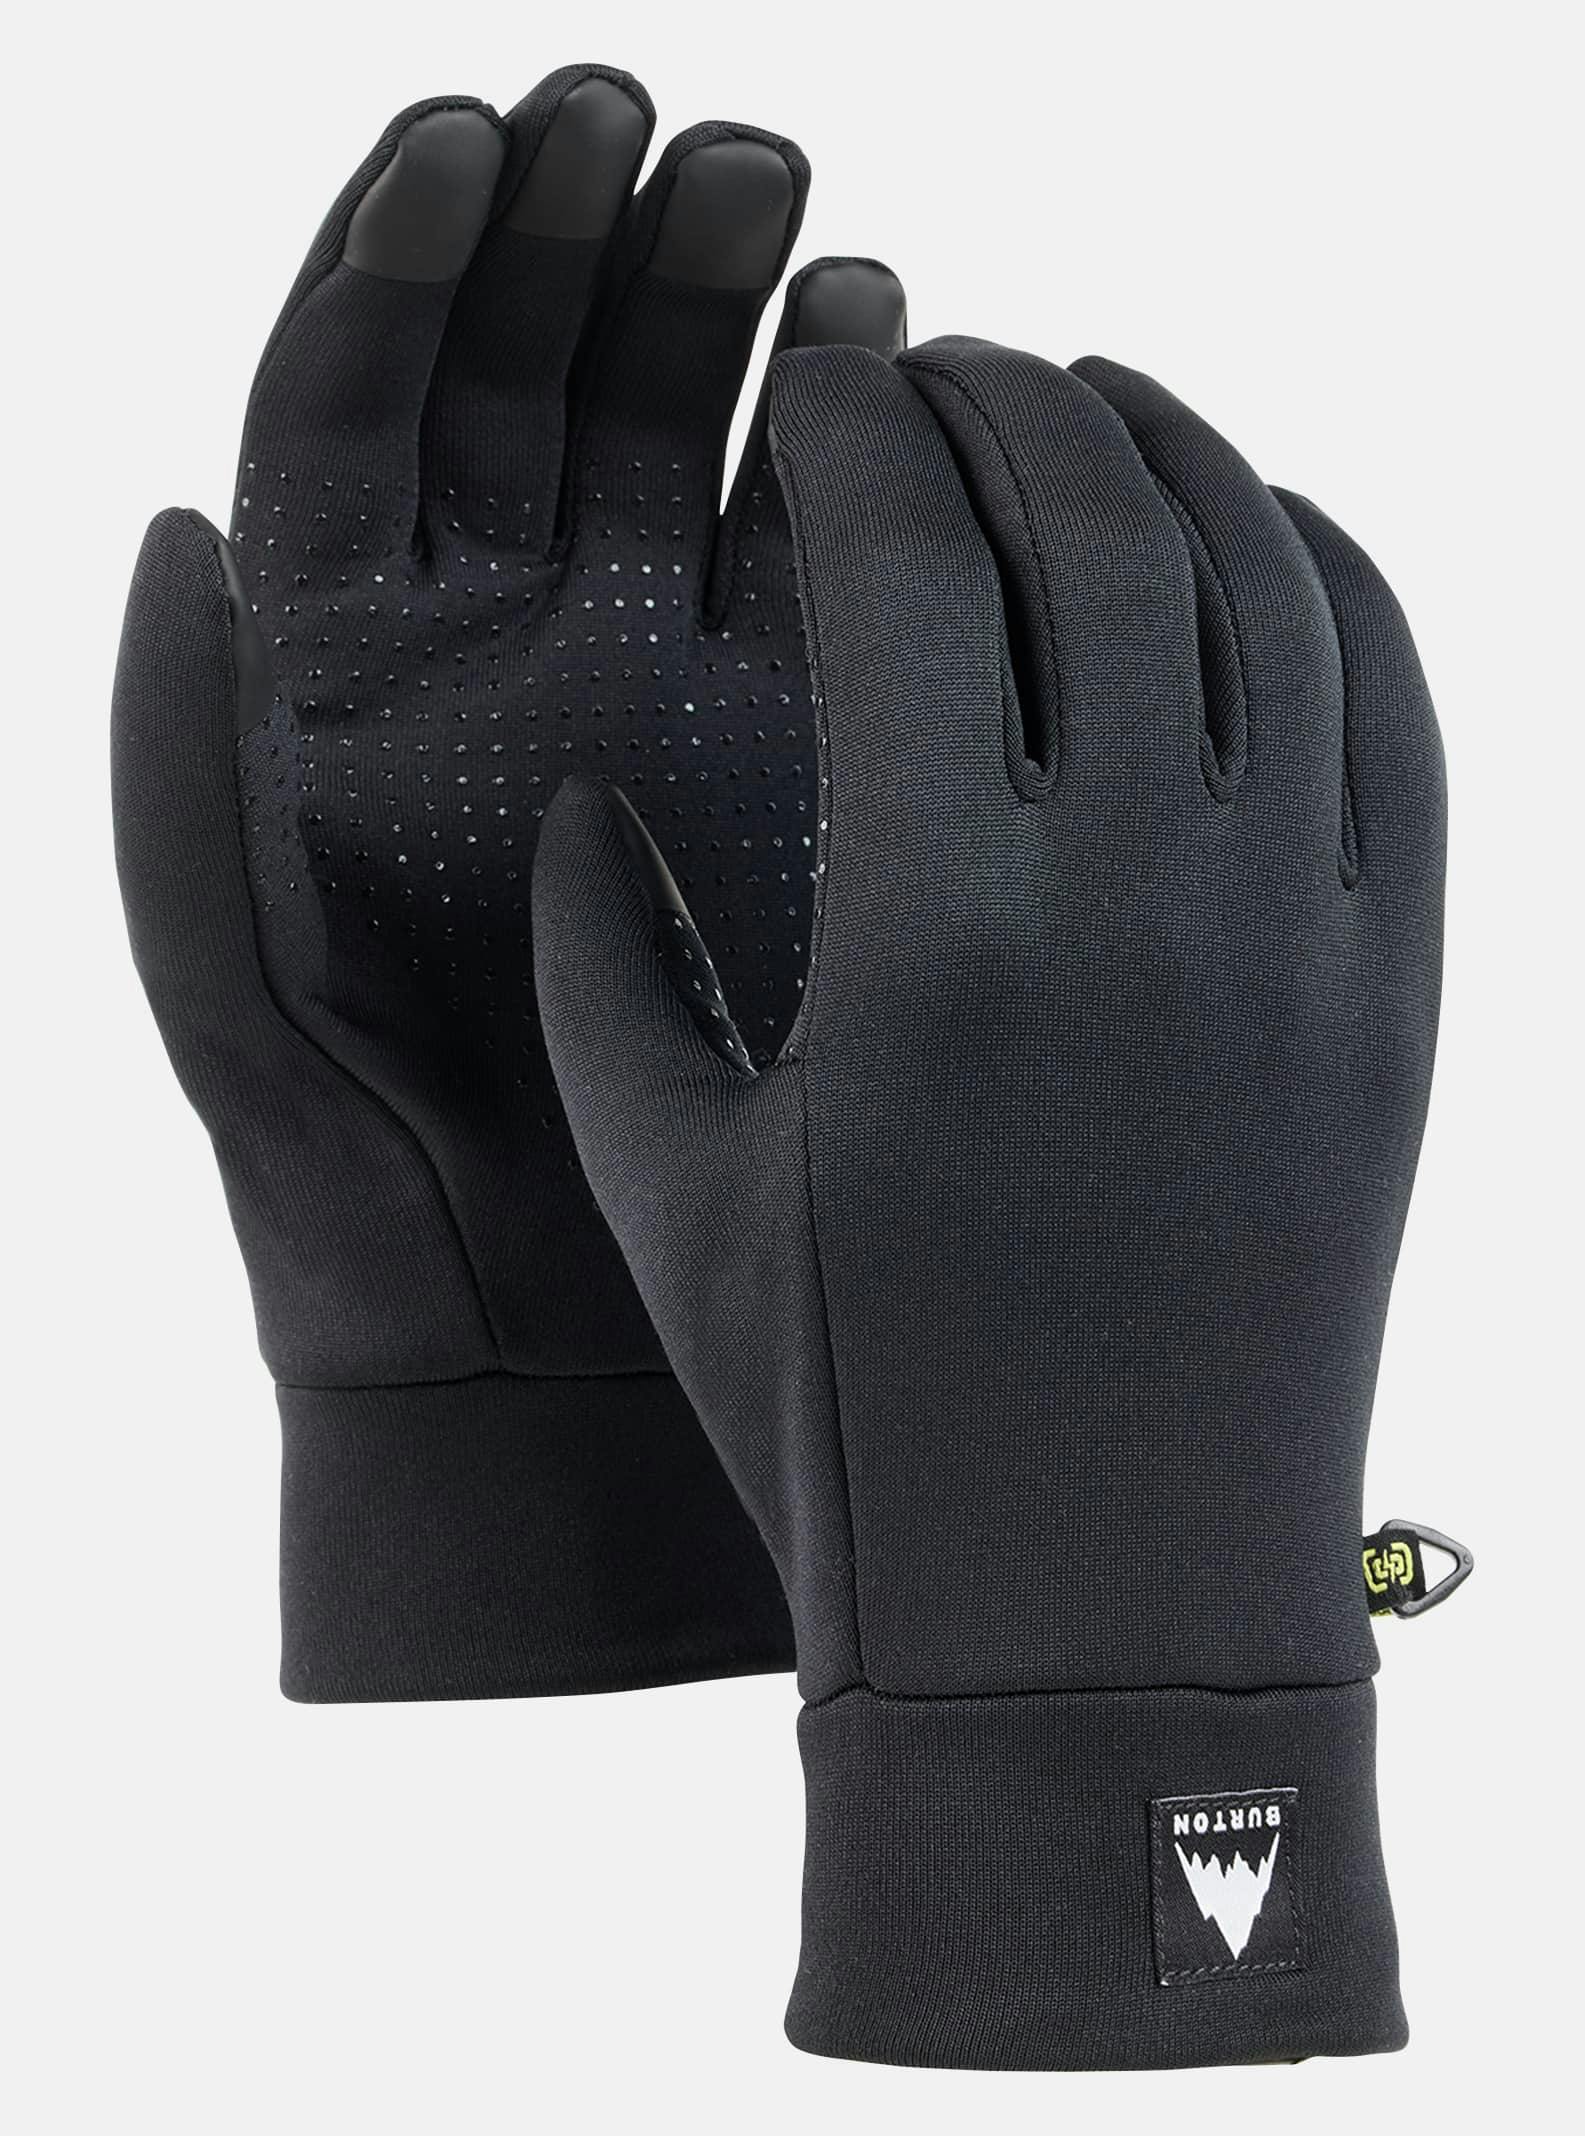 Burton Power Stretch Glove Liner